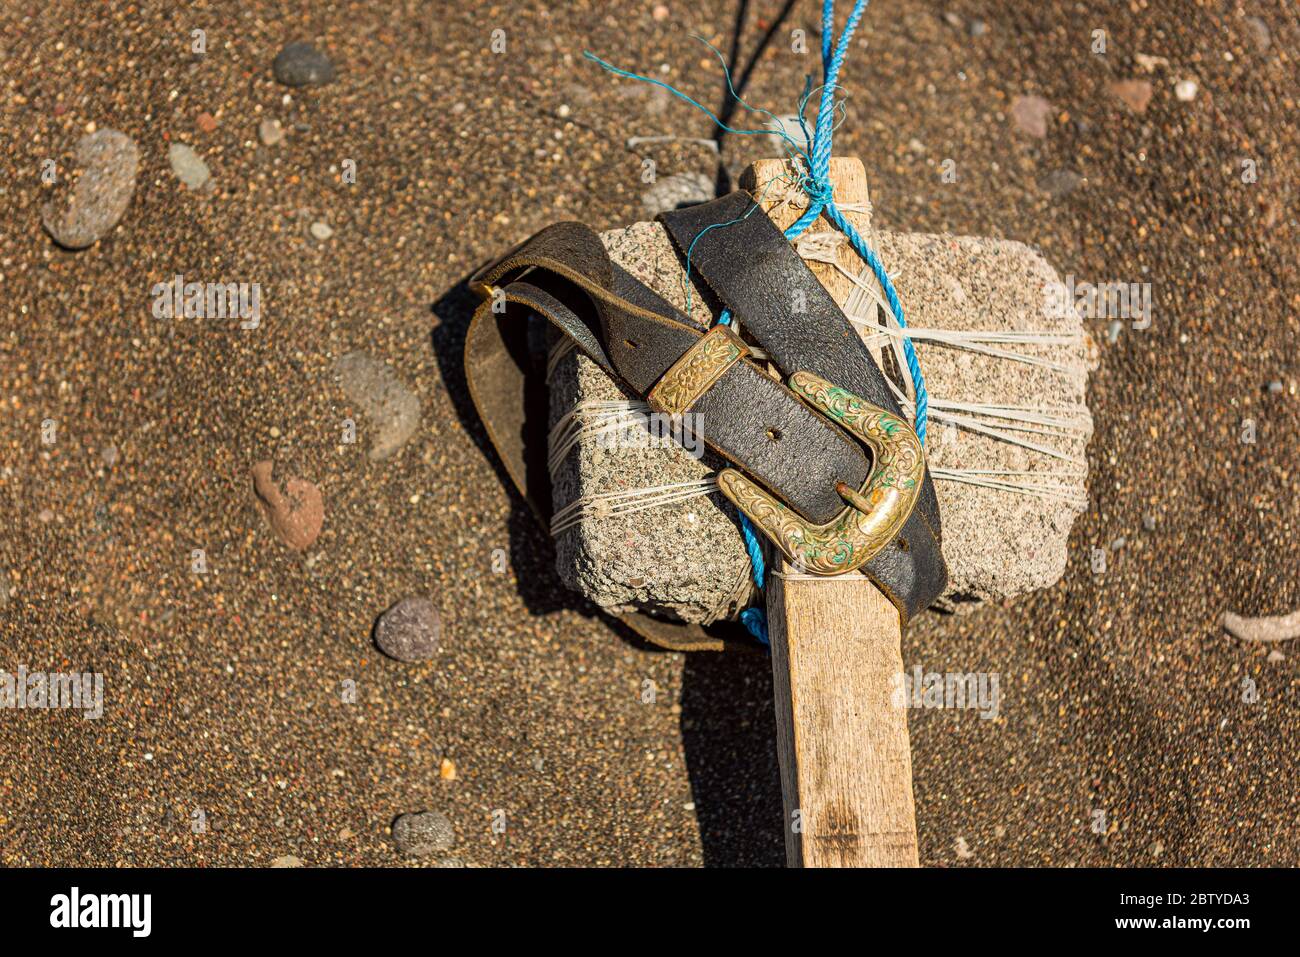 Martillo indígena hecho a mano con piedra y cinturón Foto de stock